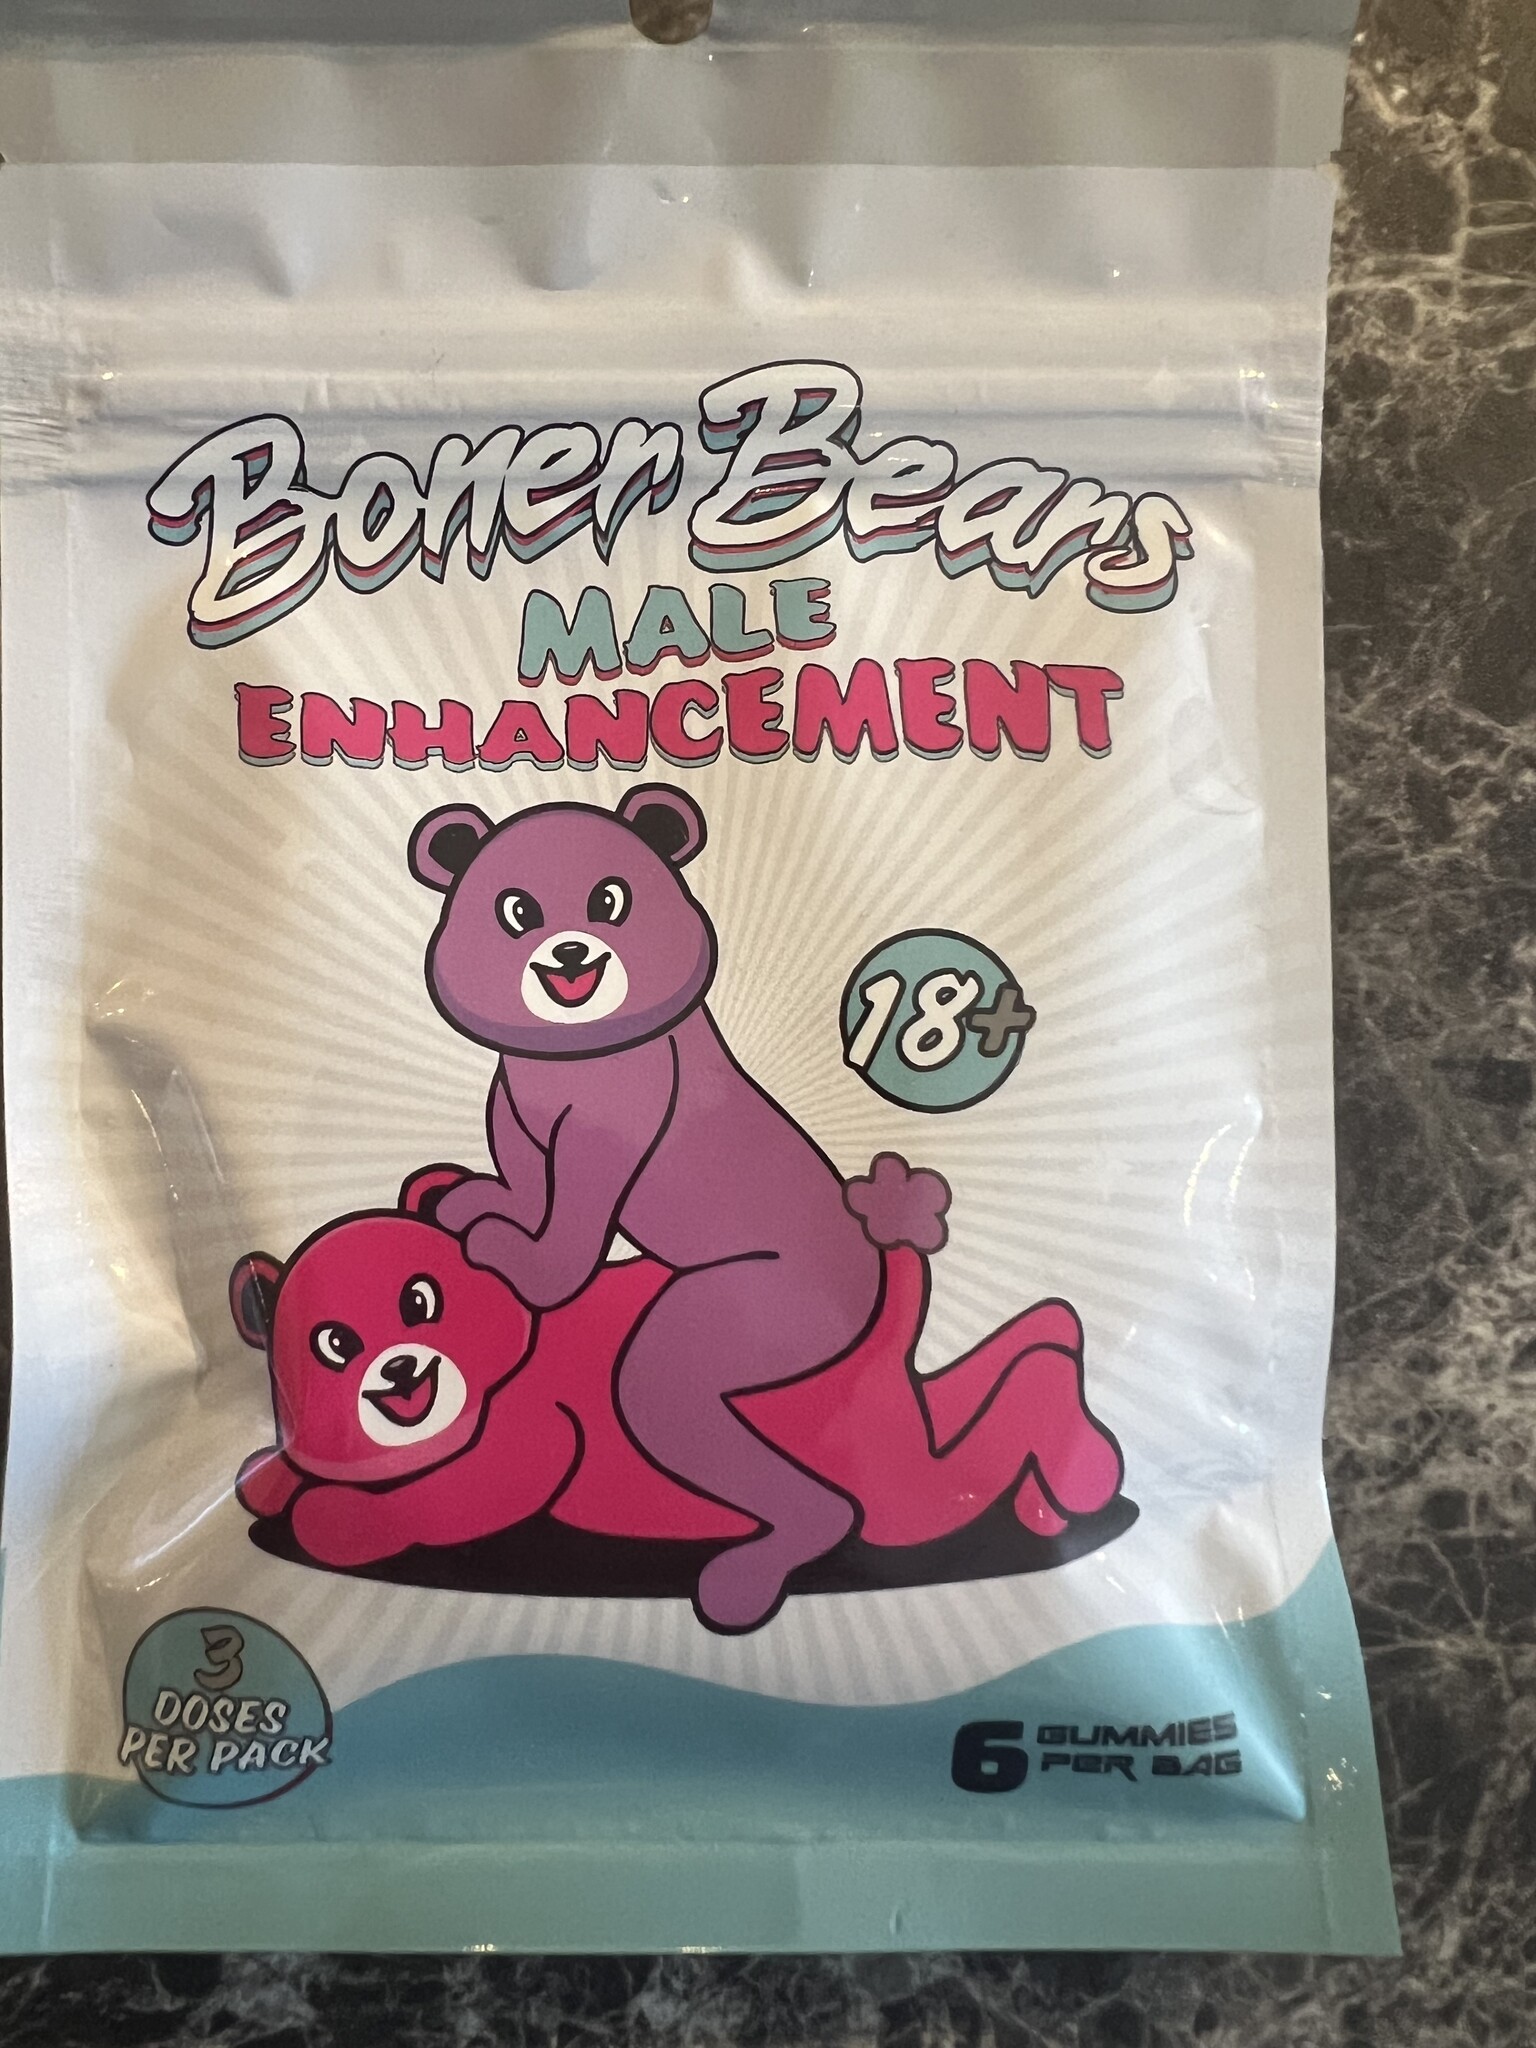 Boner Bears, Gummy "pecker upper", 3 dose pack